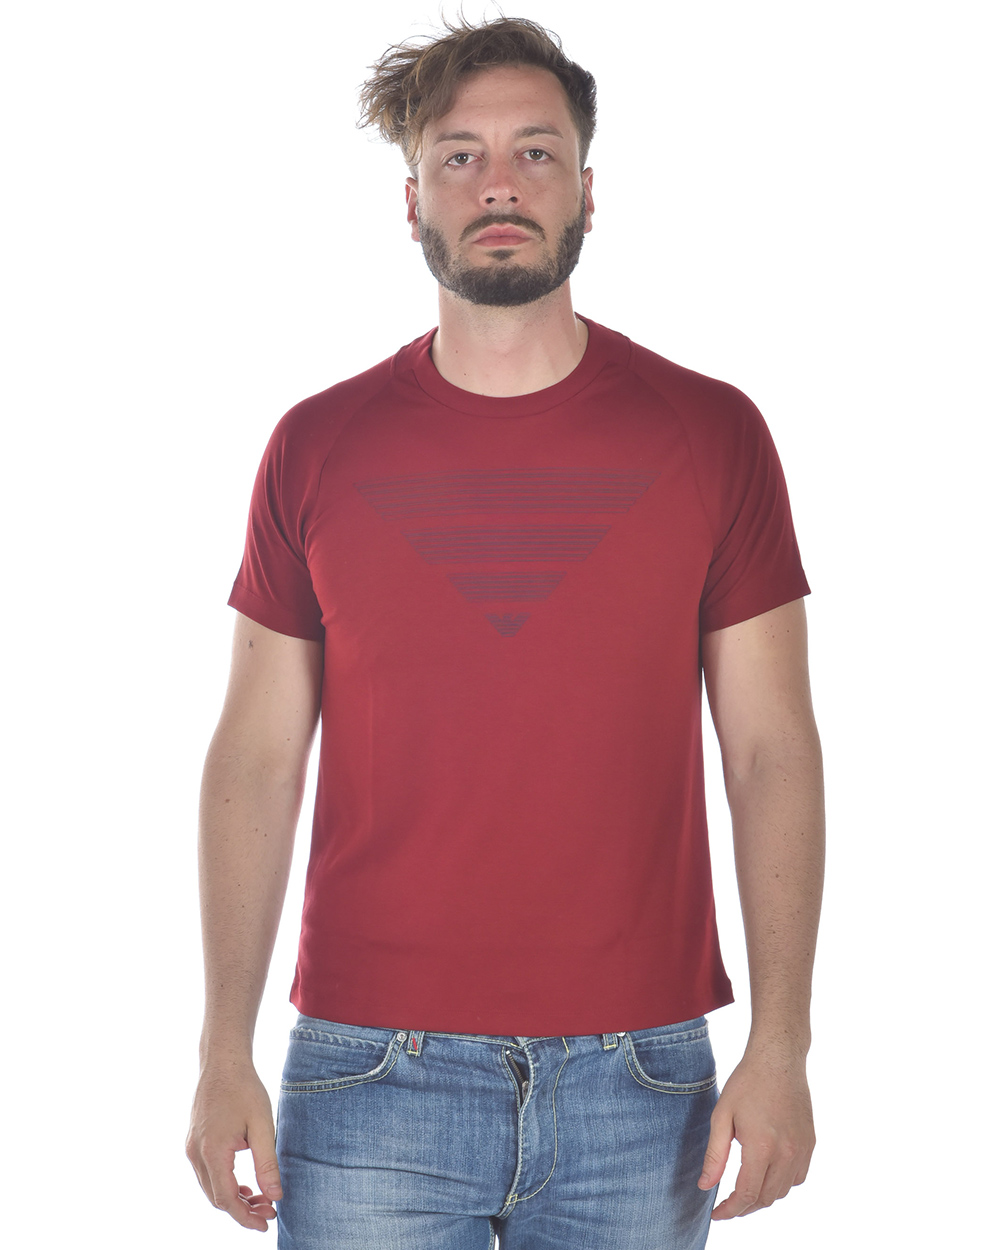 T shirt Maglietta Emporio Armani Sweatshirt Cotone Uomo Rosso 3Z1T711JPRZ 340